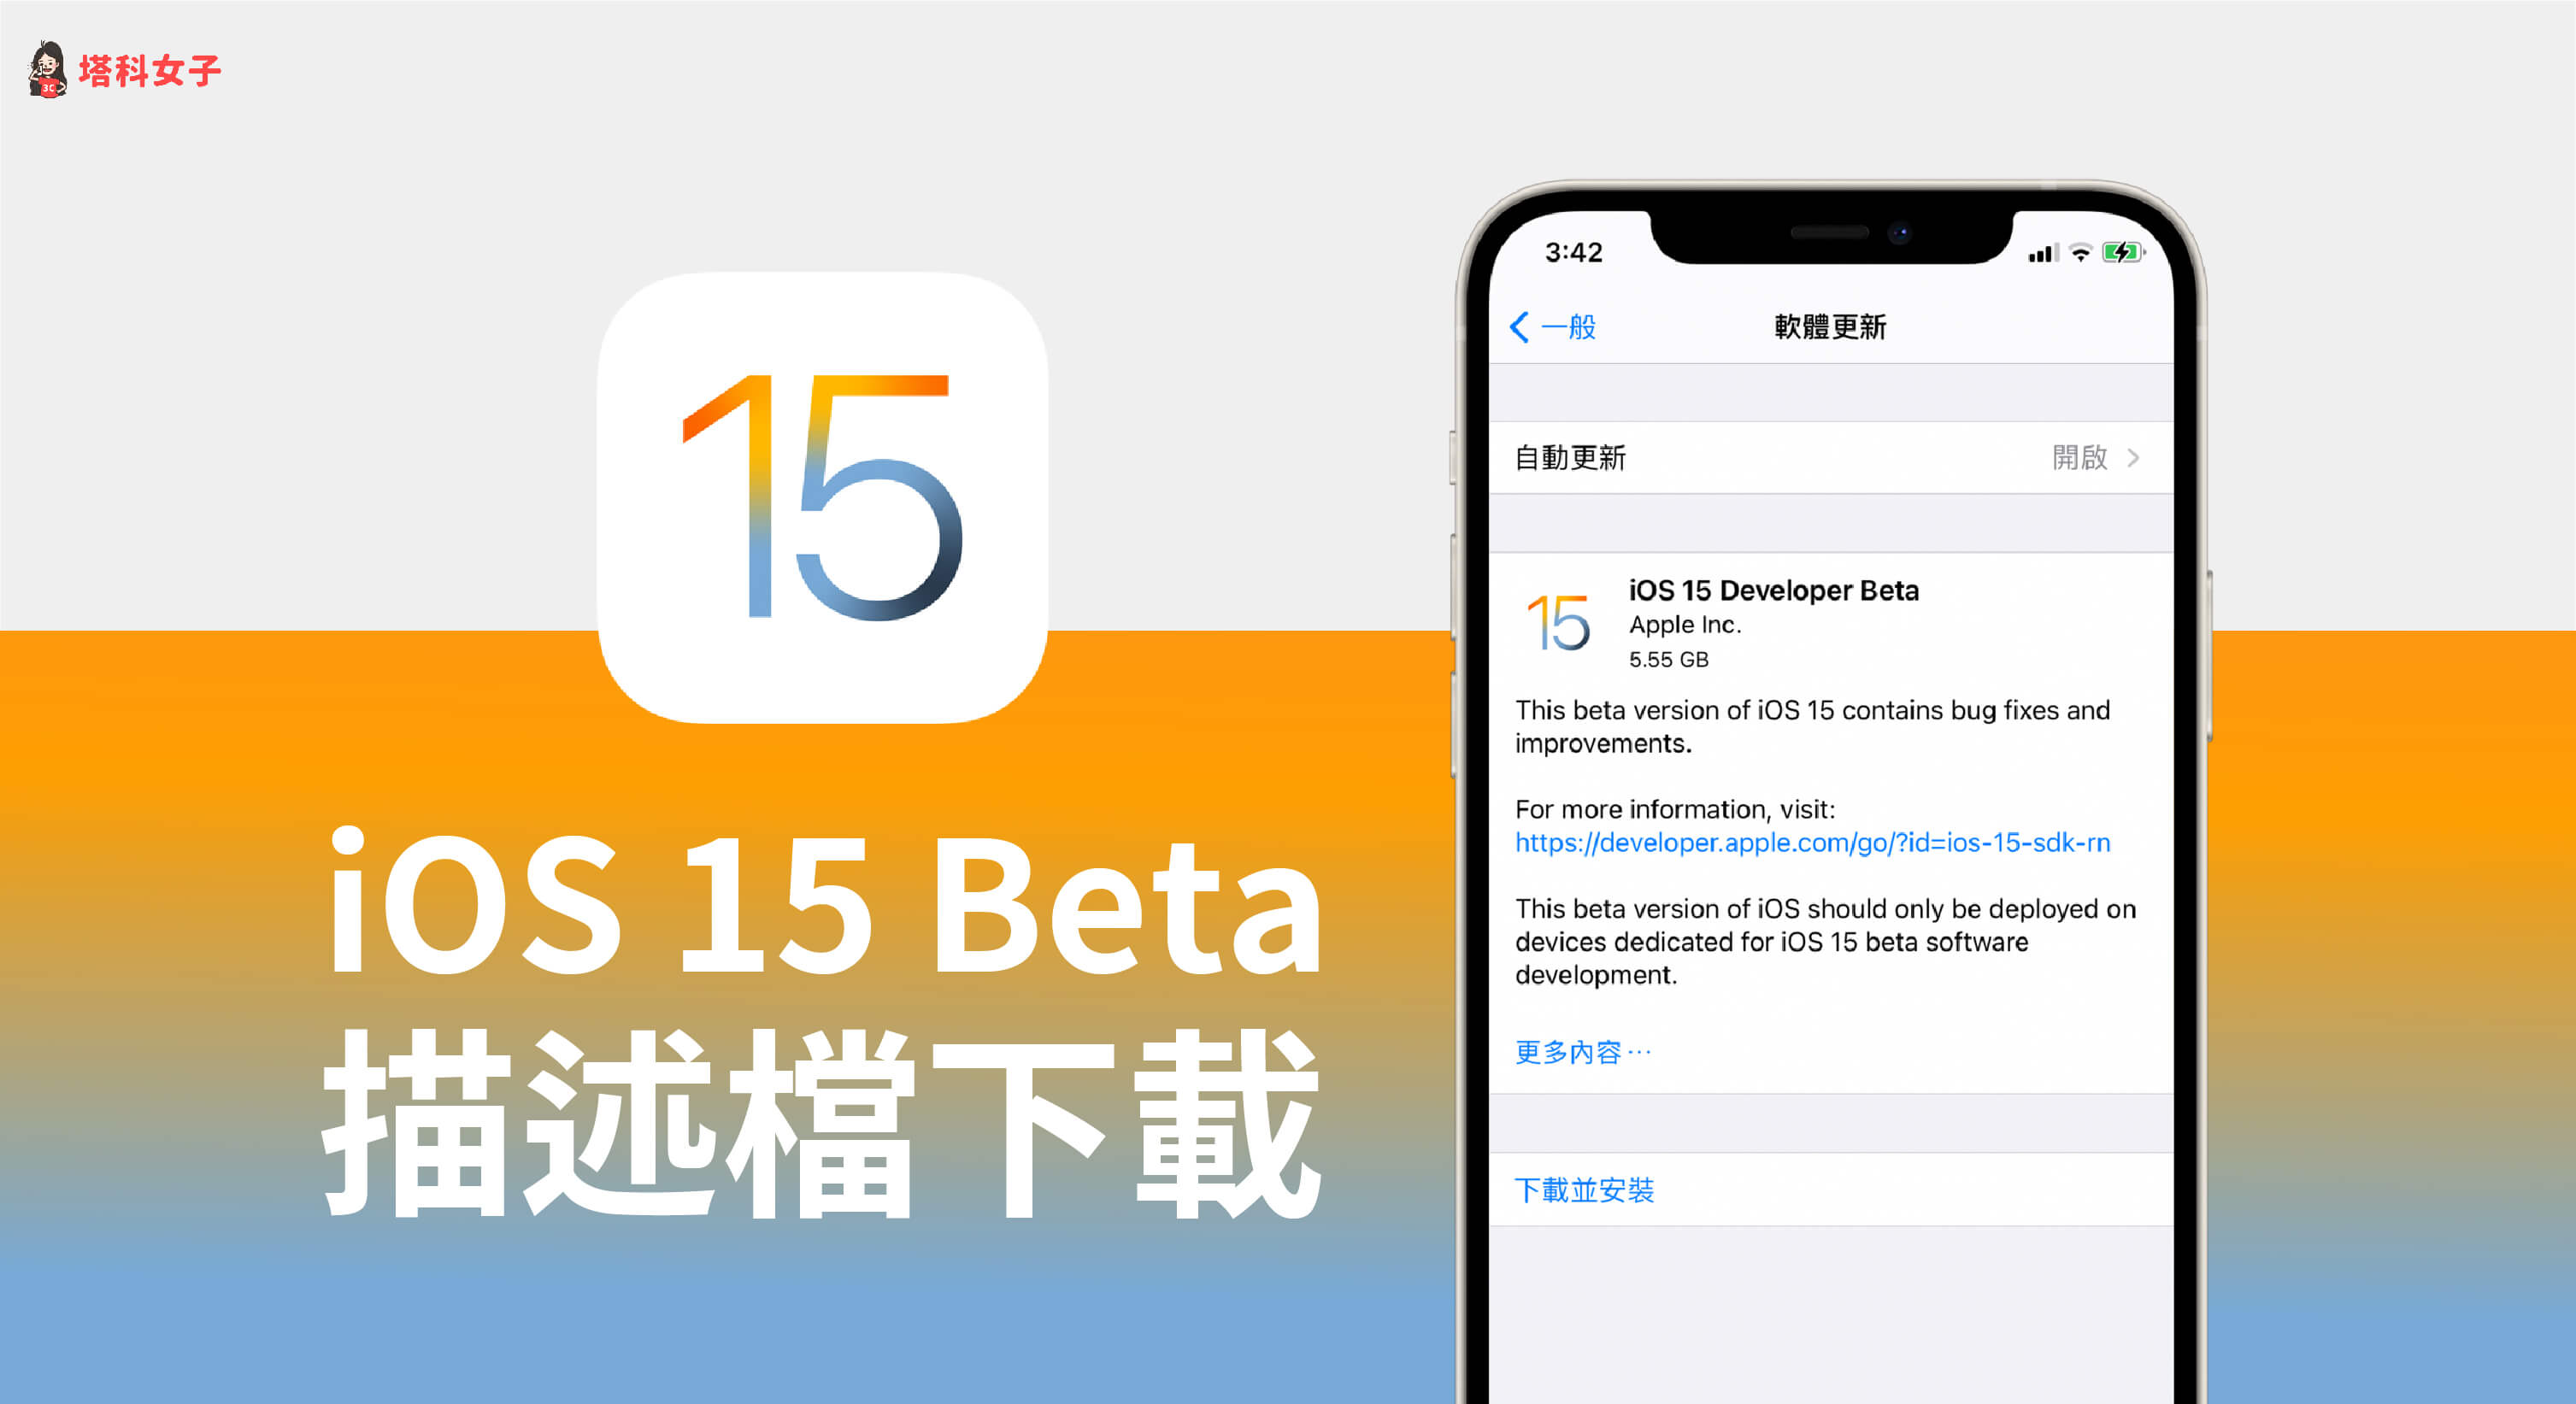 iPhone 如何下載 iOS 15 Beta 描述檔？教你這招搶先更新 iOS 15！